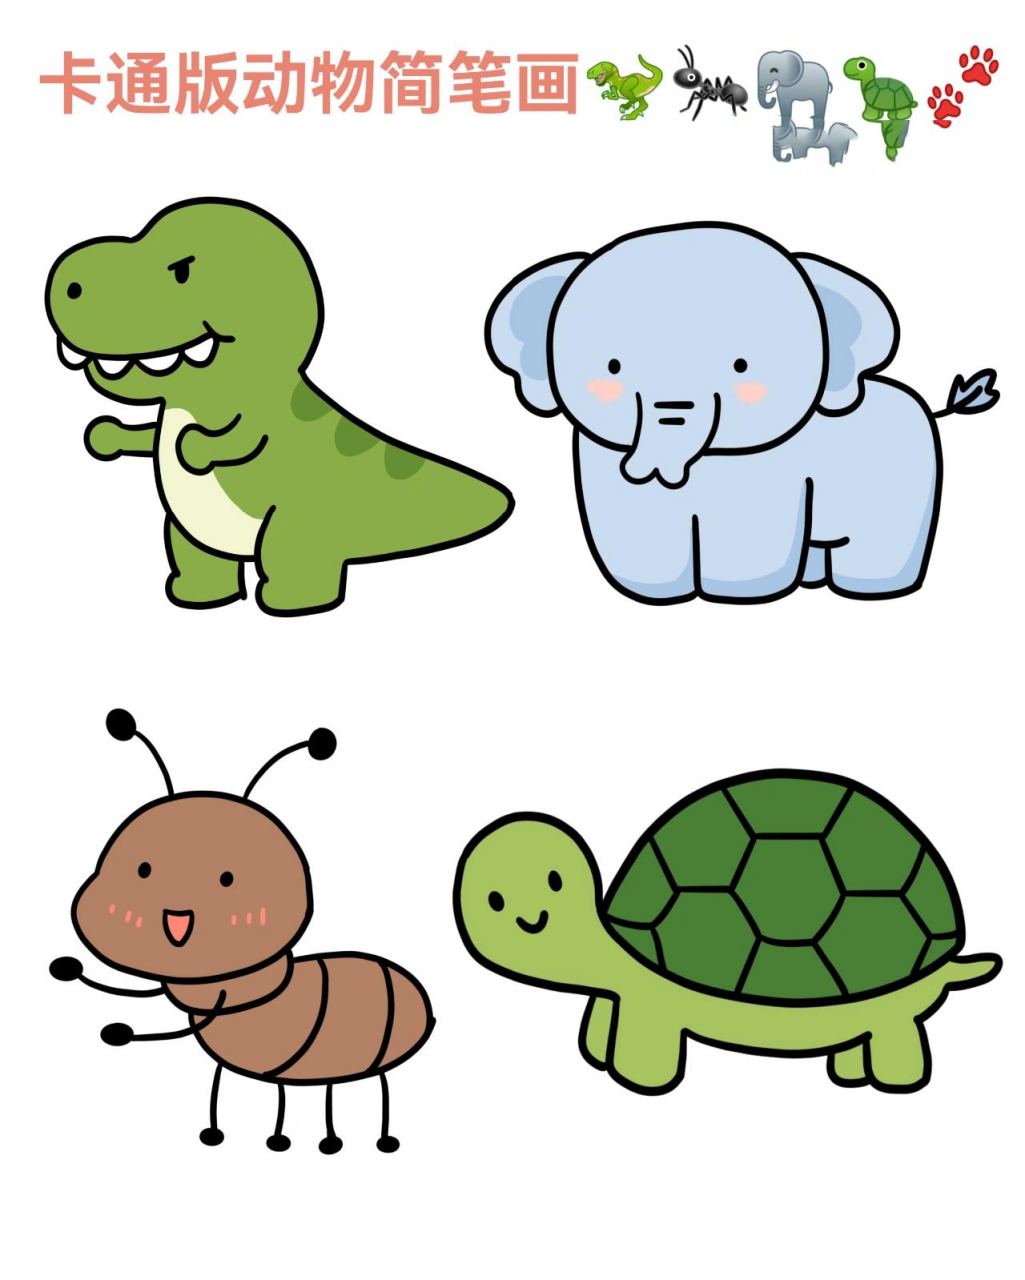 67可可爱爱的卡通版小动物简笔画 简单又可爱,附线稿,快学起来叭